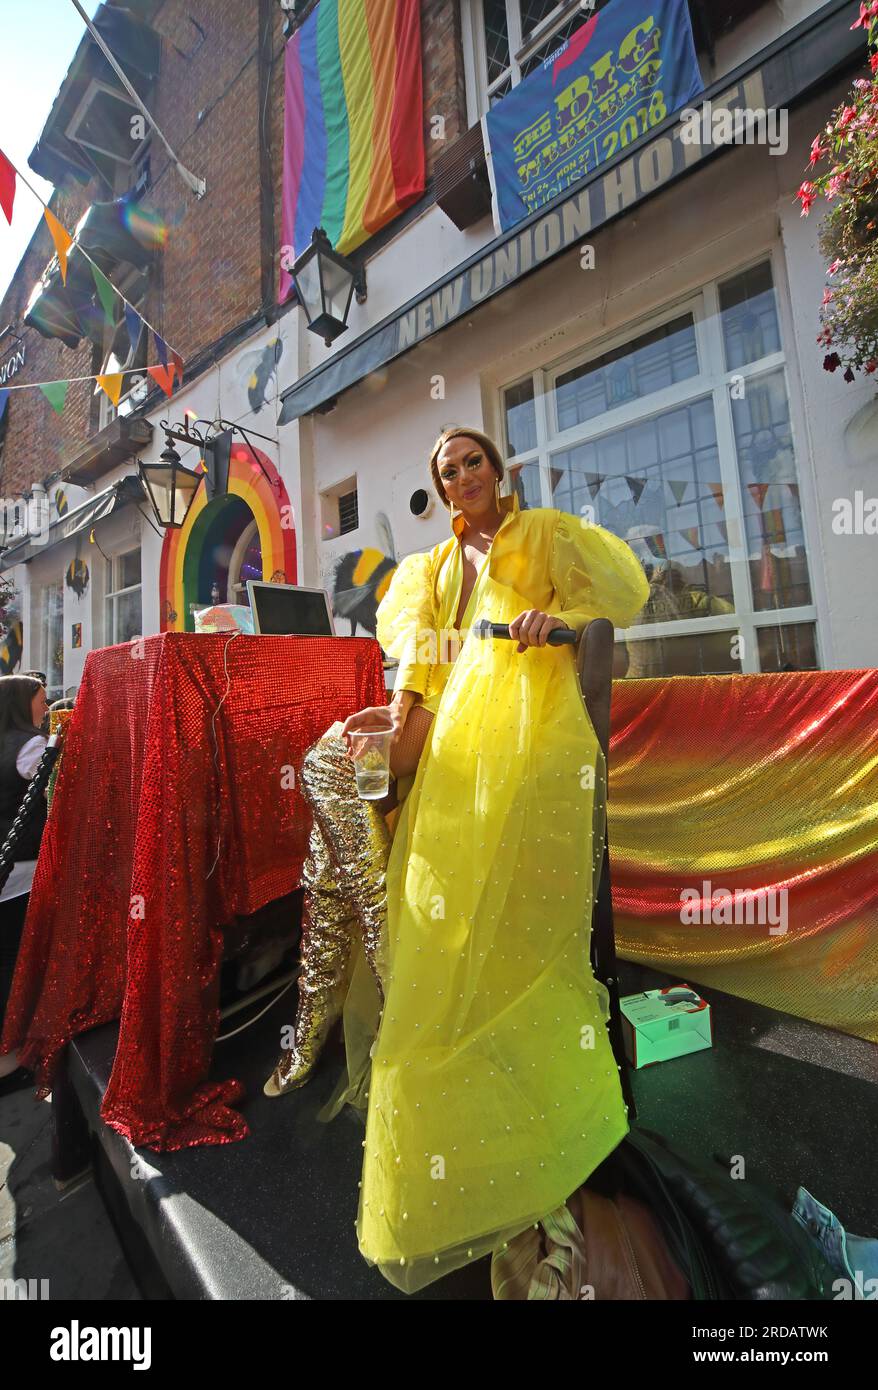 Godendo del Manchester Pride Festival, festività di agosto presso il New Union Hotel, Gay Village, 111 Princess St, Manchester, Inghilterra, REGNO UNITO, M1 6JB Foto Stock